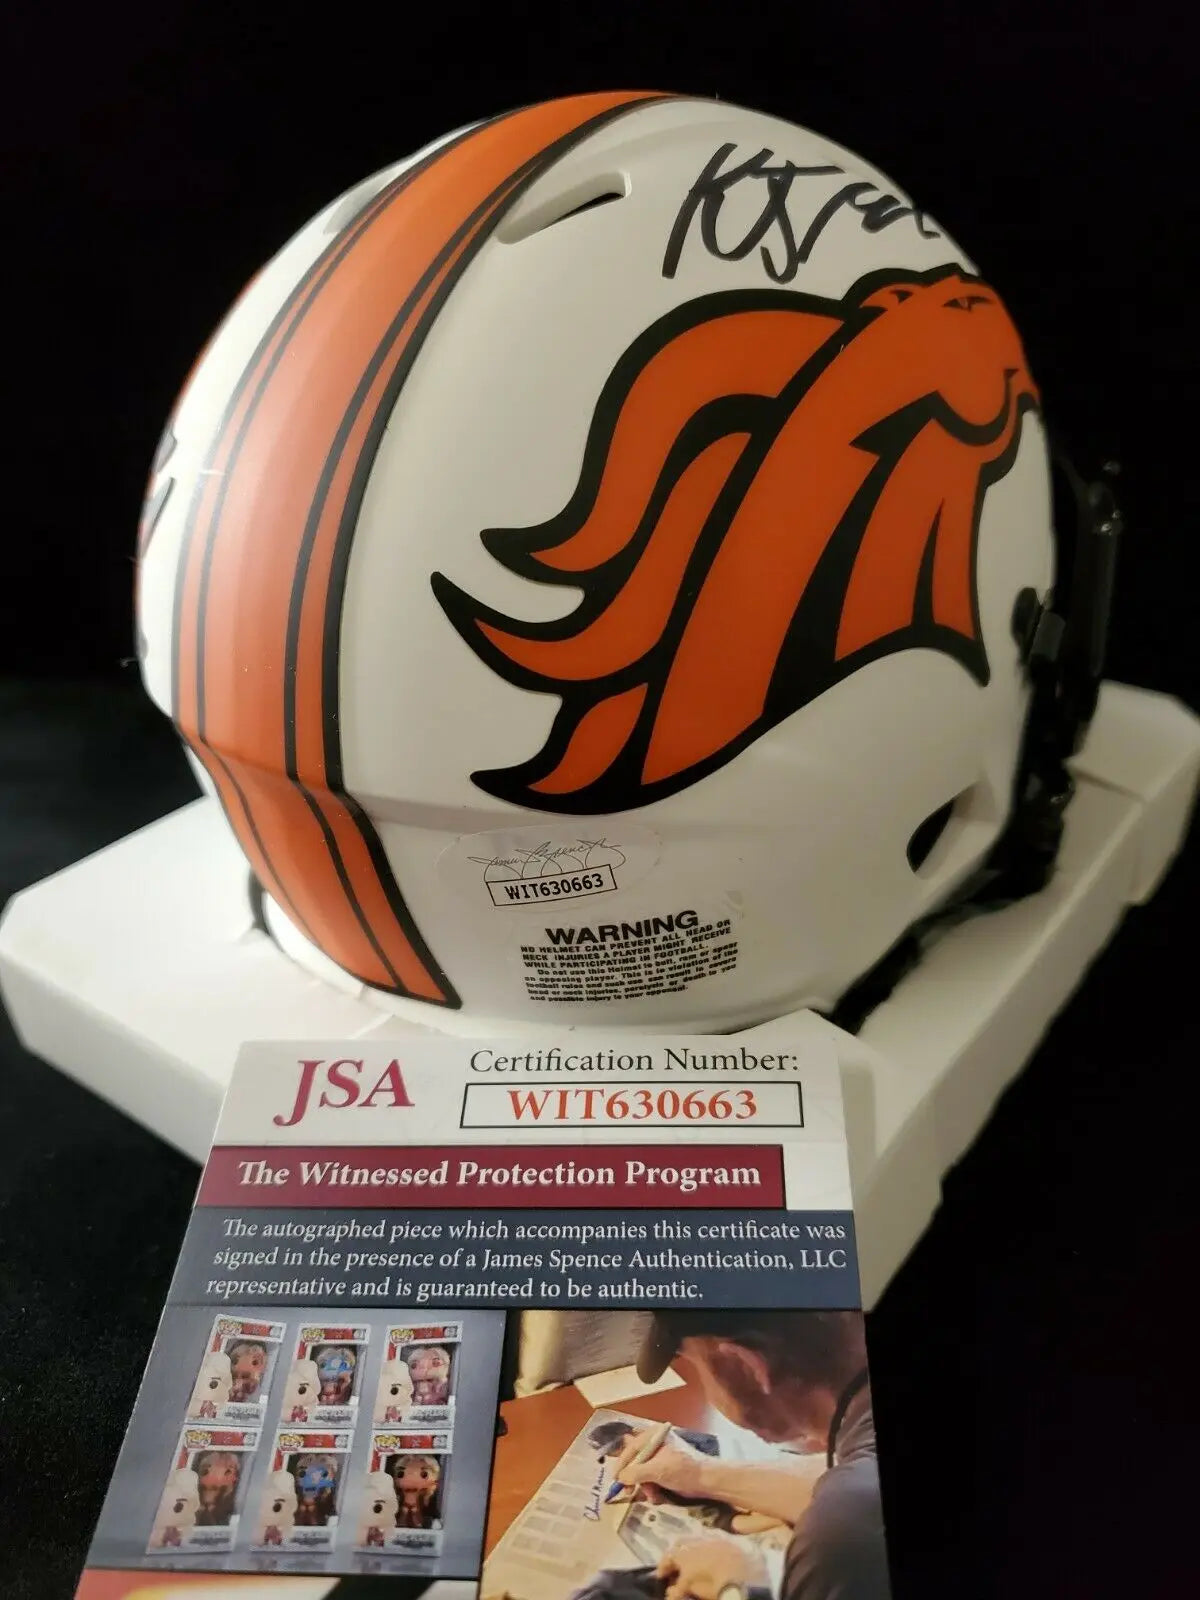 MVP Authentics Kj Hamler Autographed Black Signed Denver Broncos Lunar Mini Helmet Jsa Coa 134.10 sports jersey framing , jersey framing